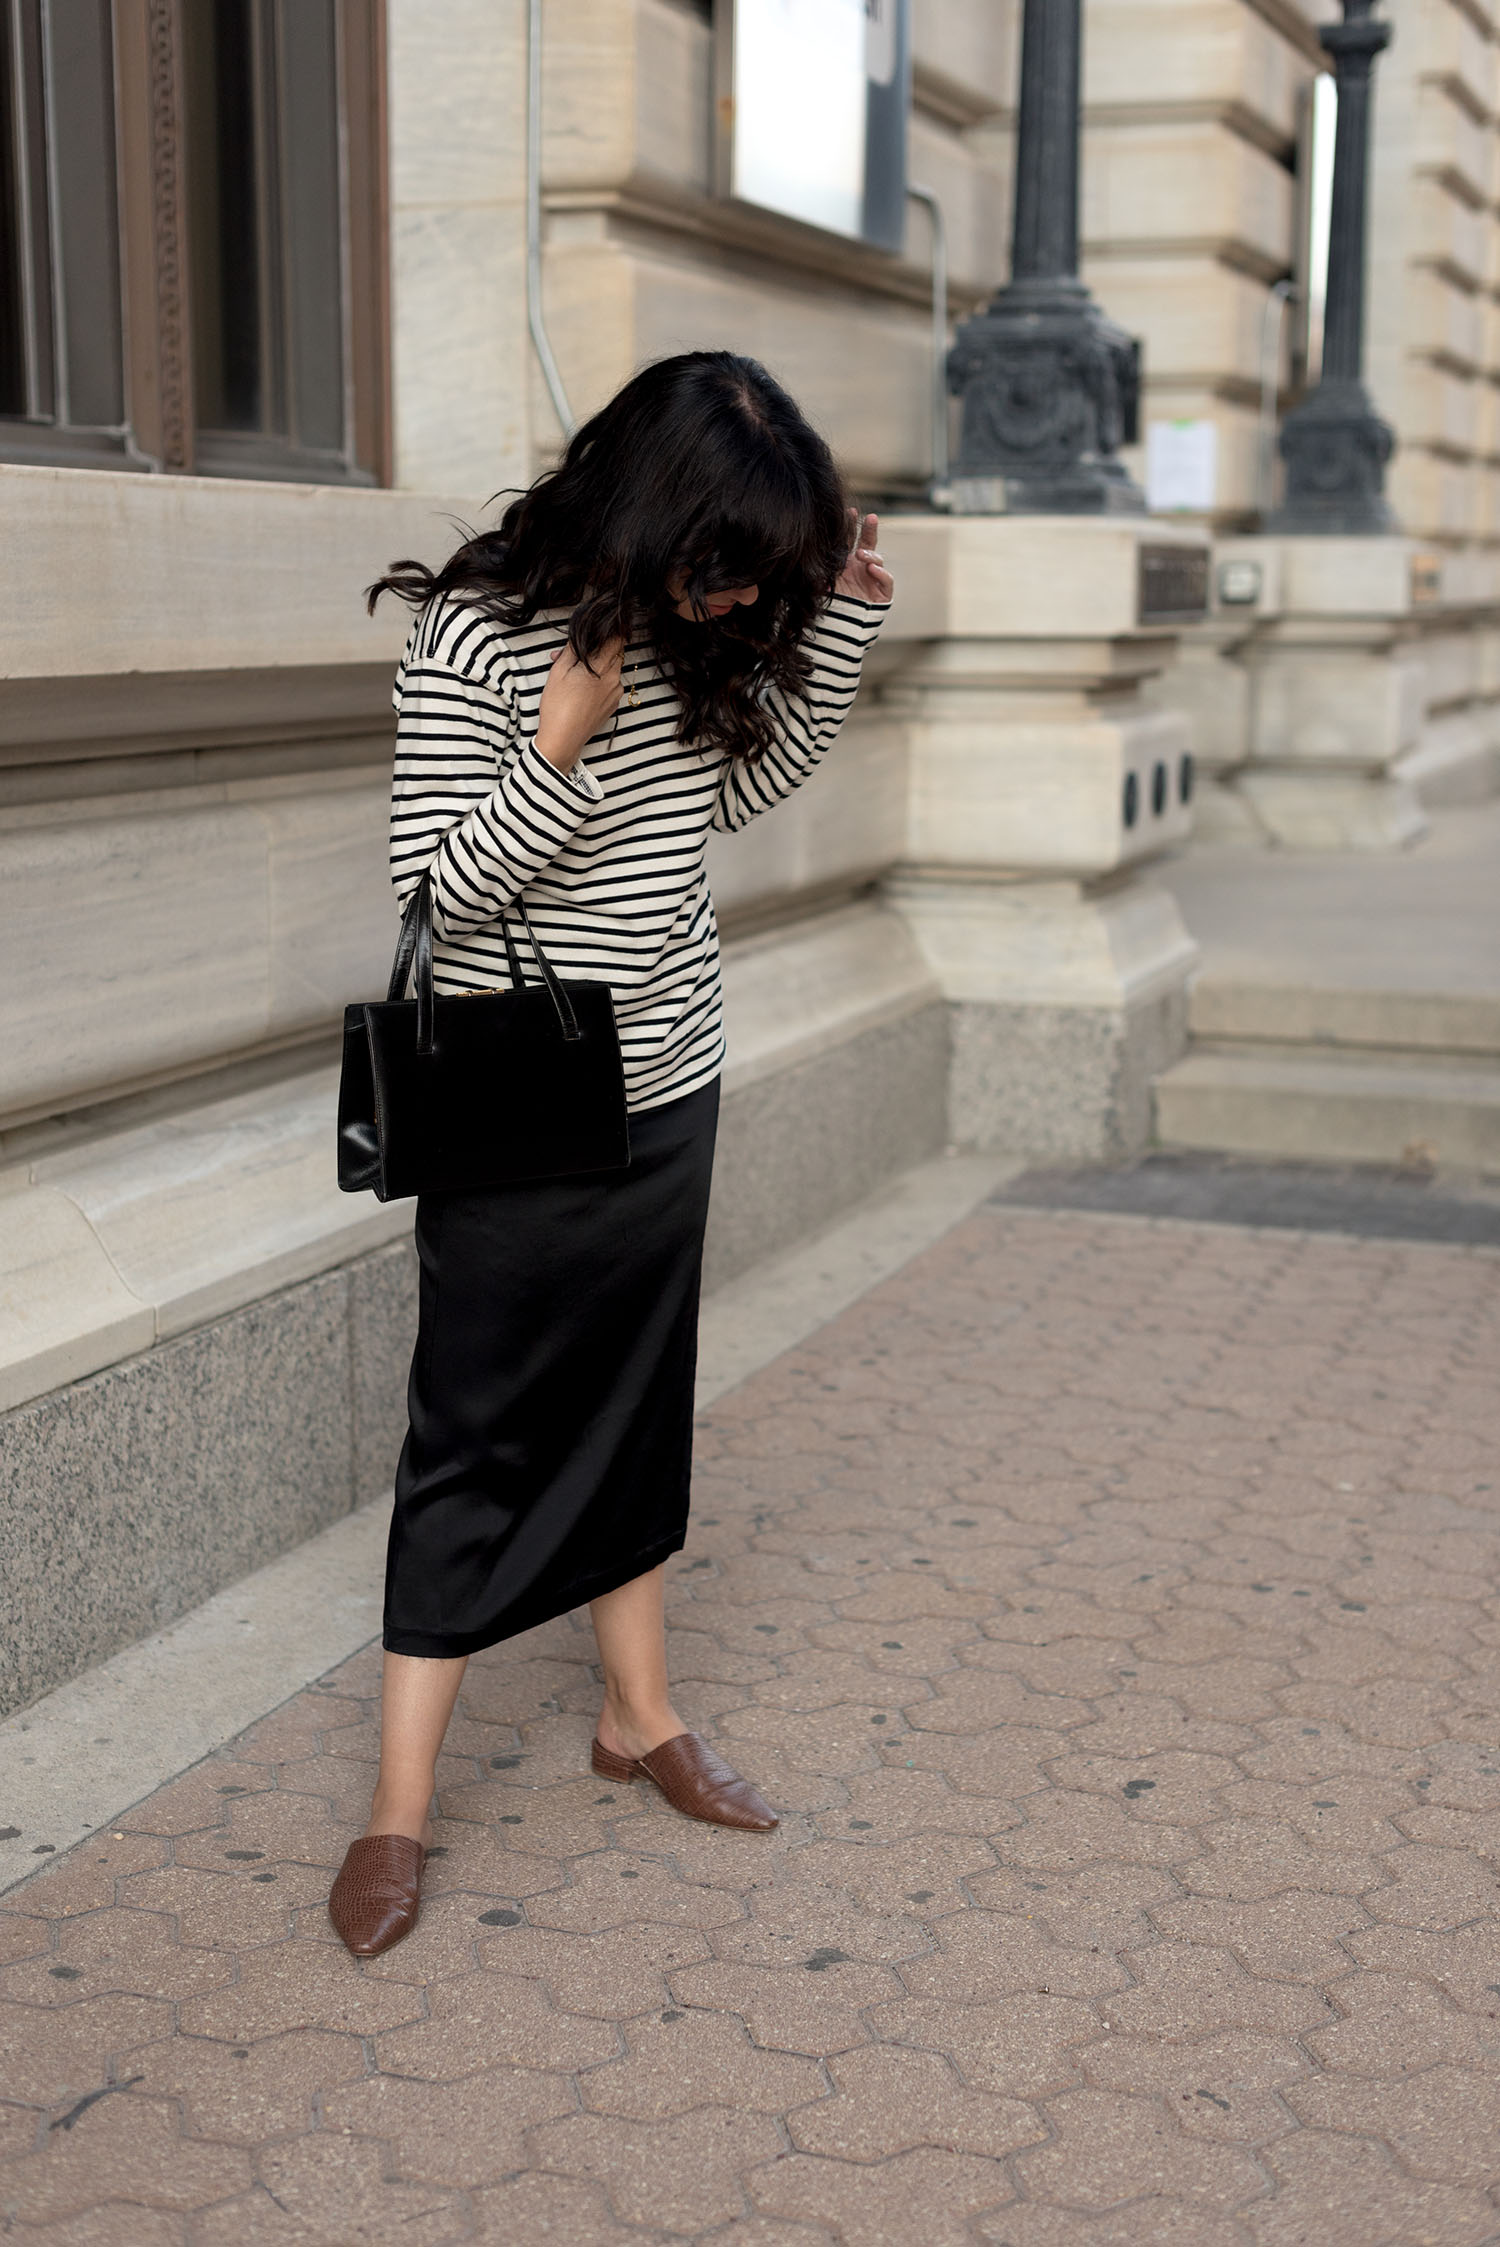 Coco & Vera - Zara striped top, Zara skirt, Oak + Fort mules